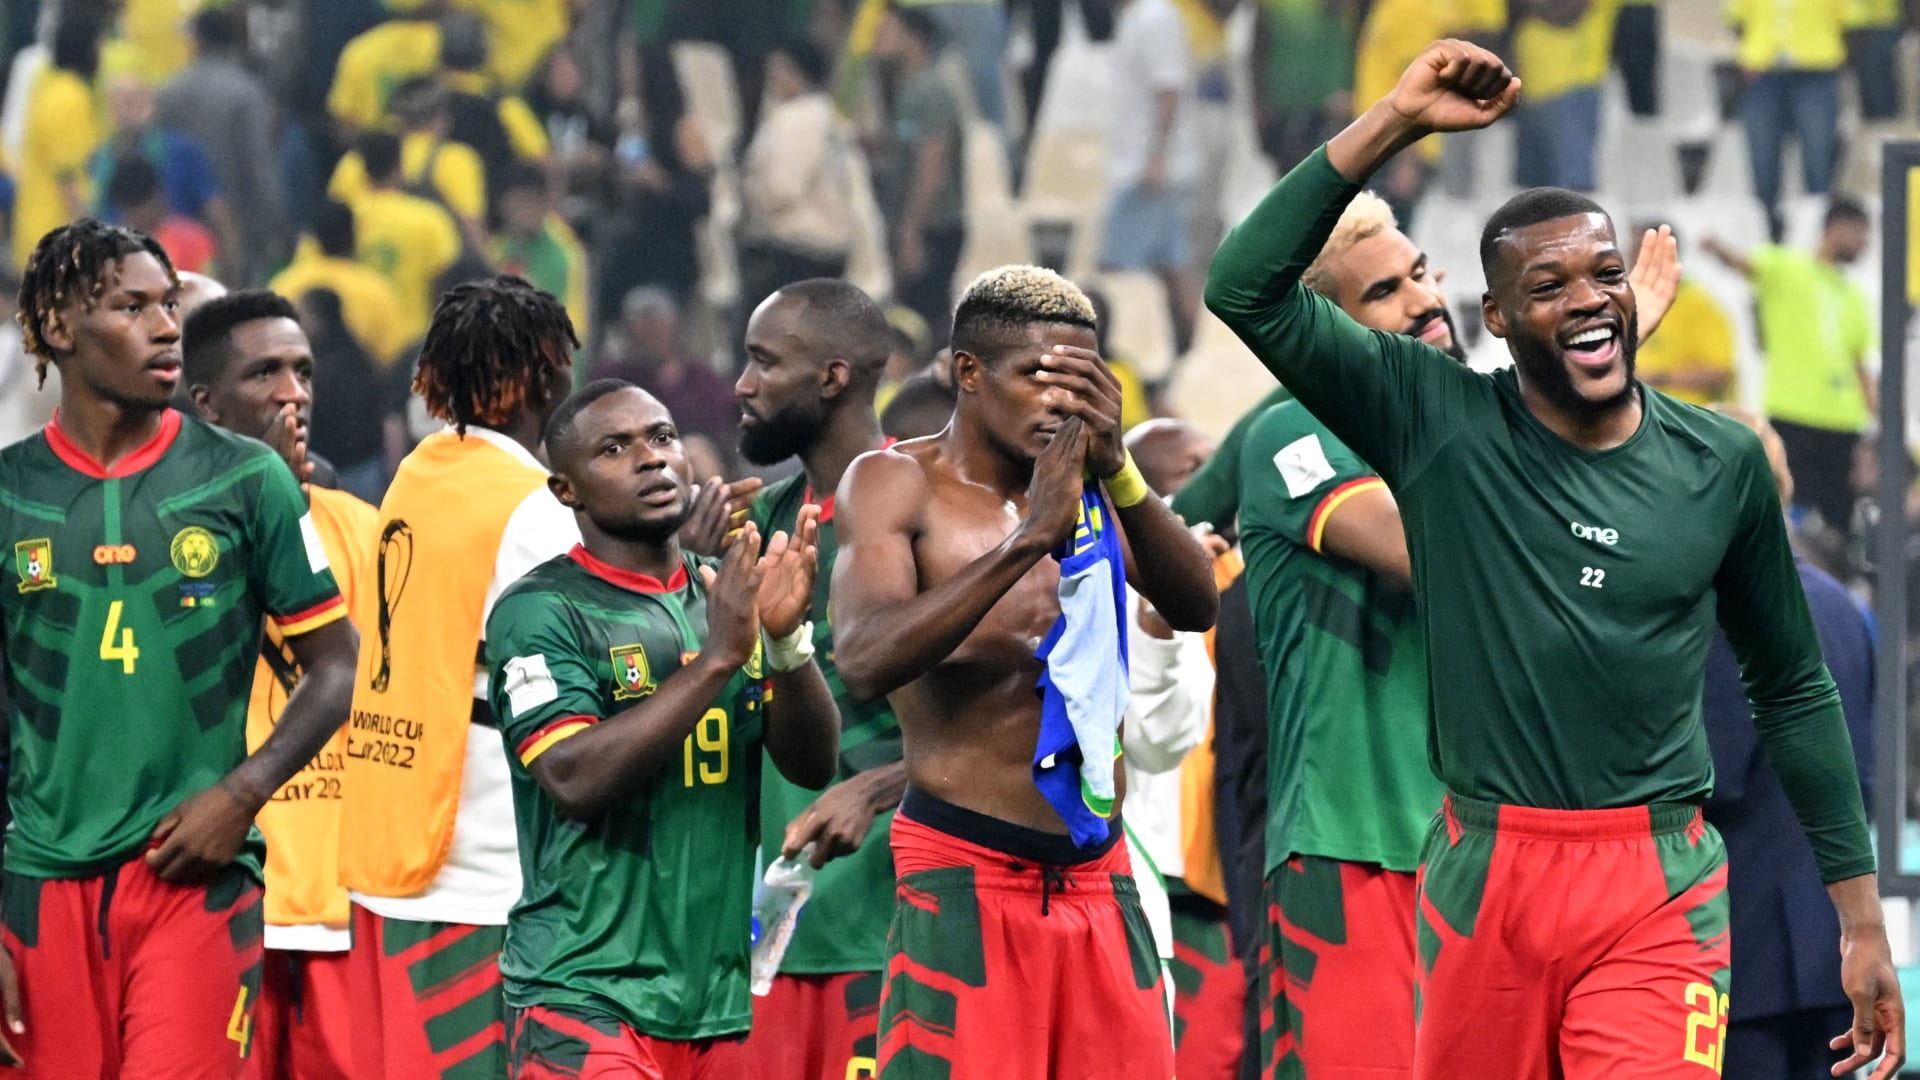 لاعبون بالمنتخب الكاميروني عقب المباراة مع البرازيل 